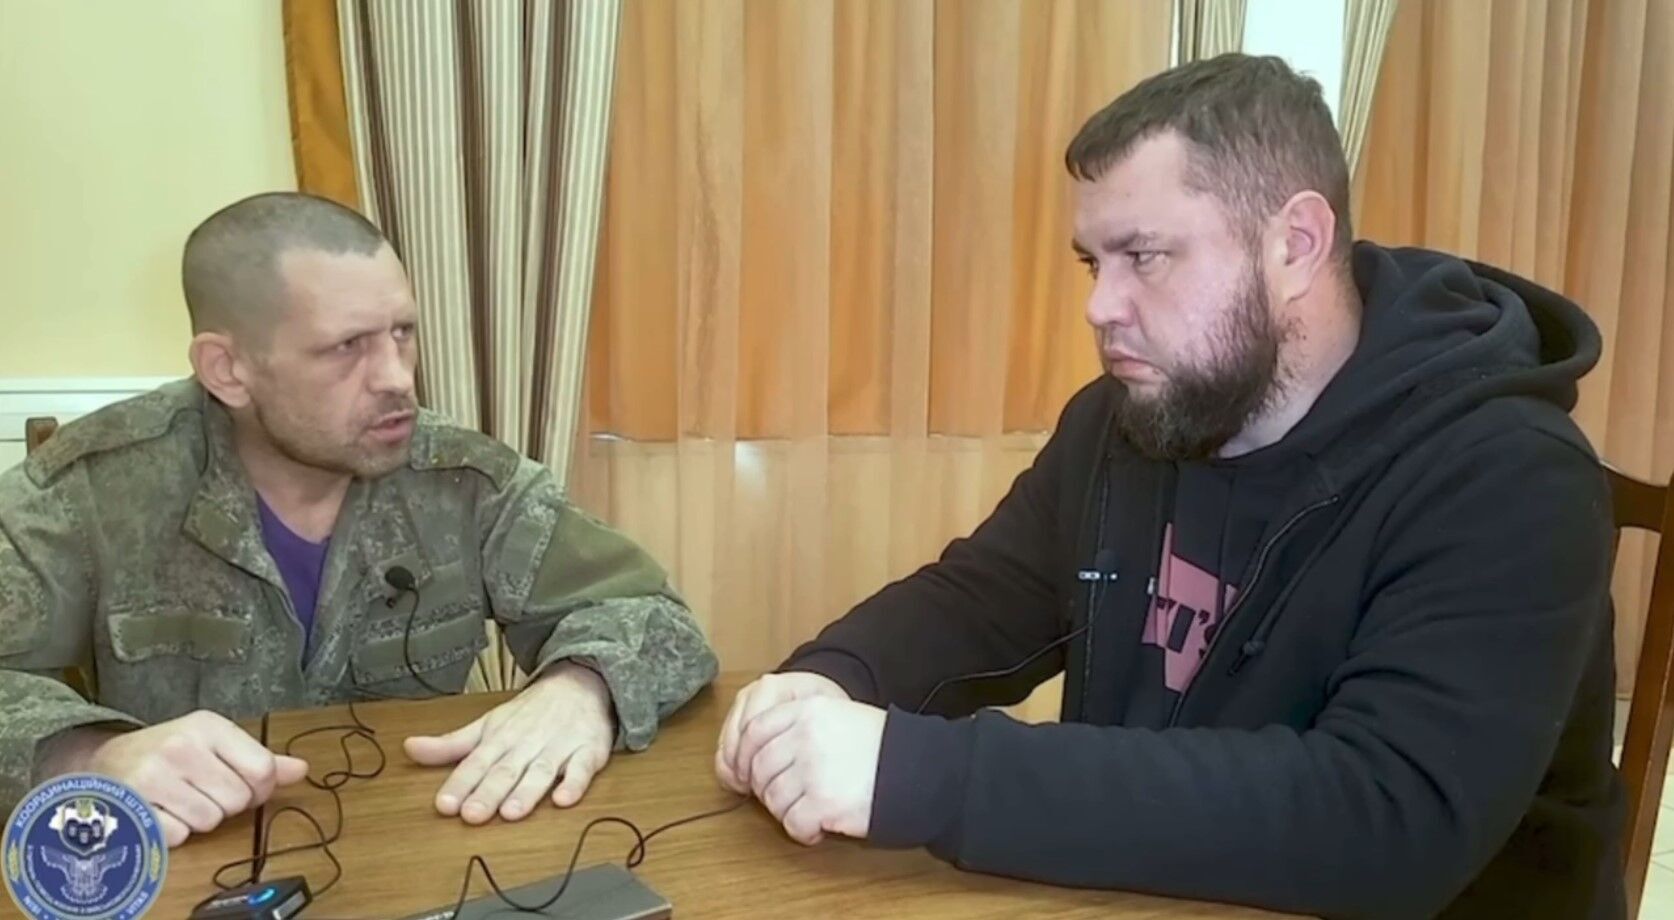 ''Ел сырые грибы, пил из лужи'': оккупант рассказал о своем ''быту'' в Украине до попадания в плен. Видео